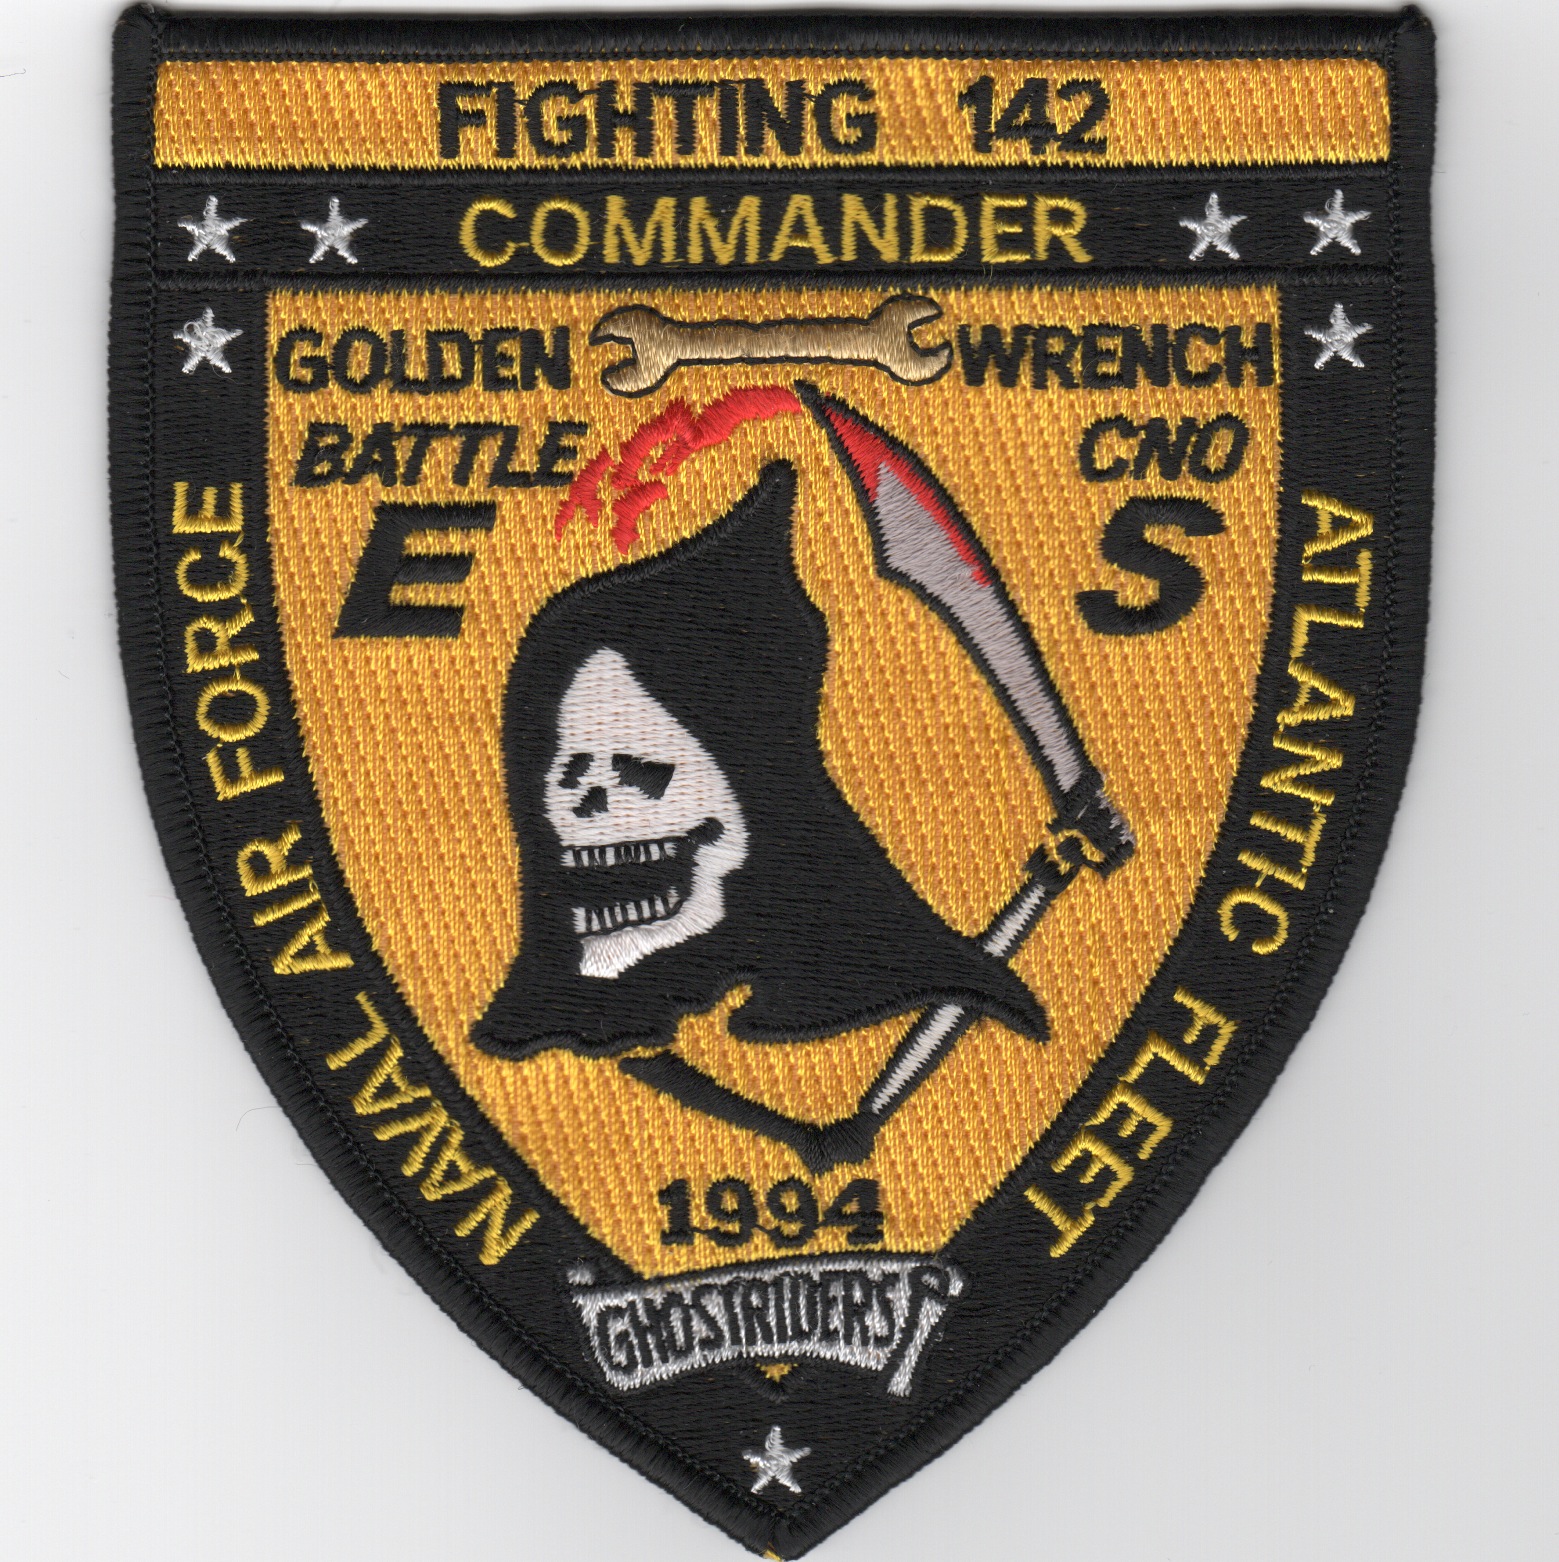 VF-142 1994 Battle 'E'/Safety 'S' Shield